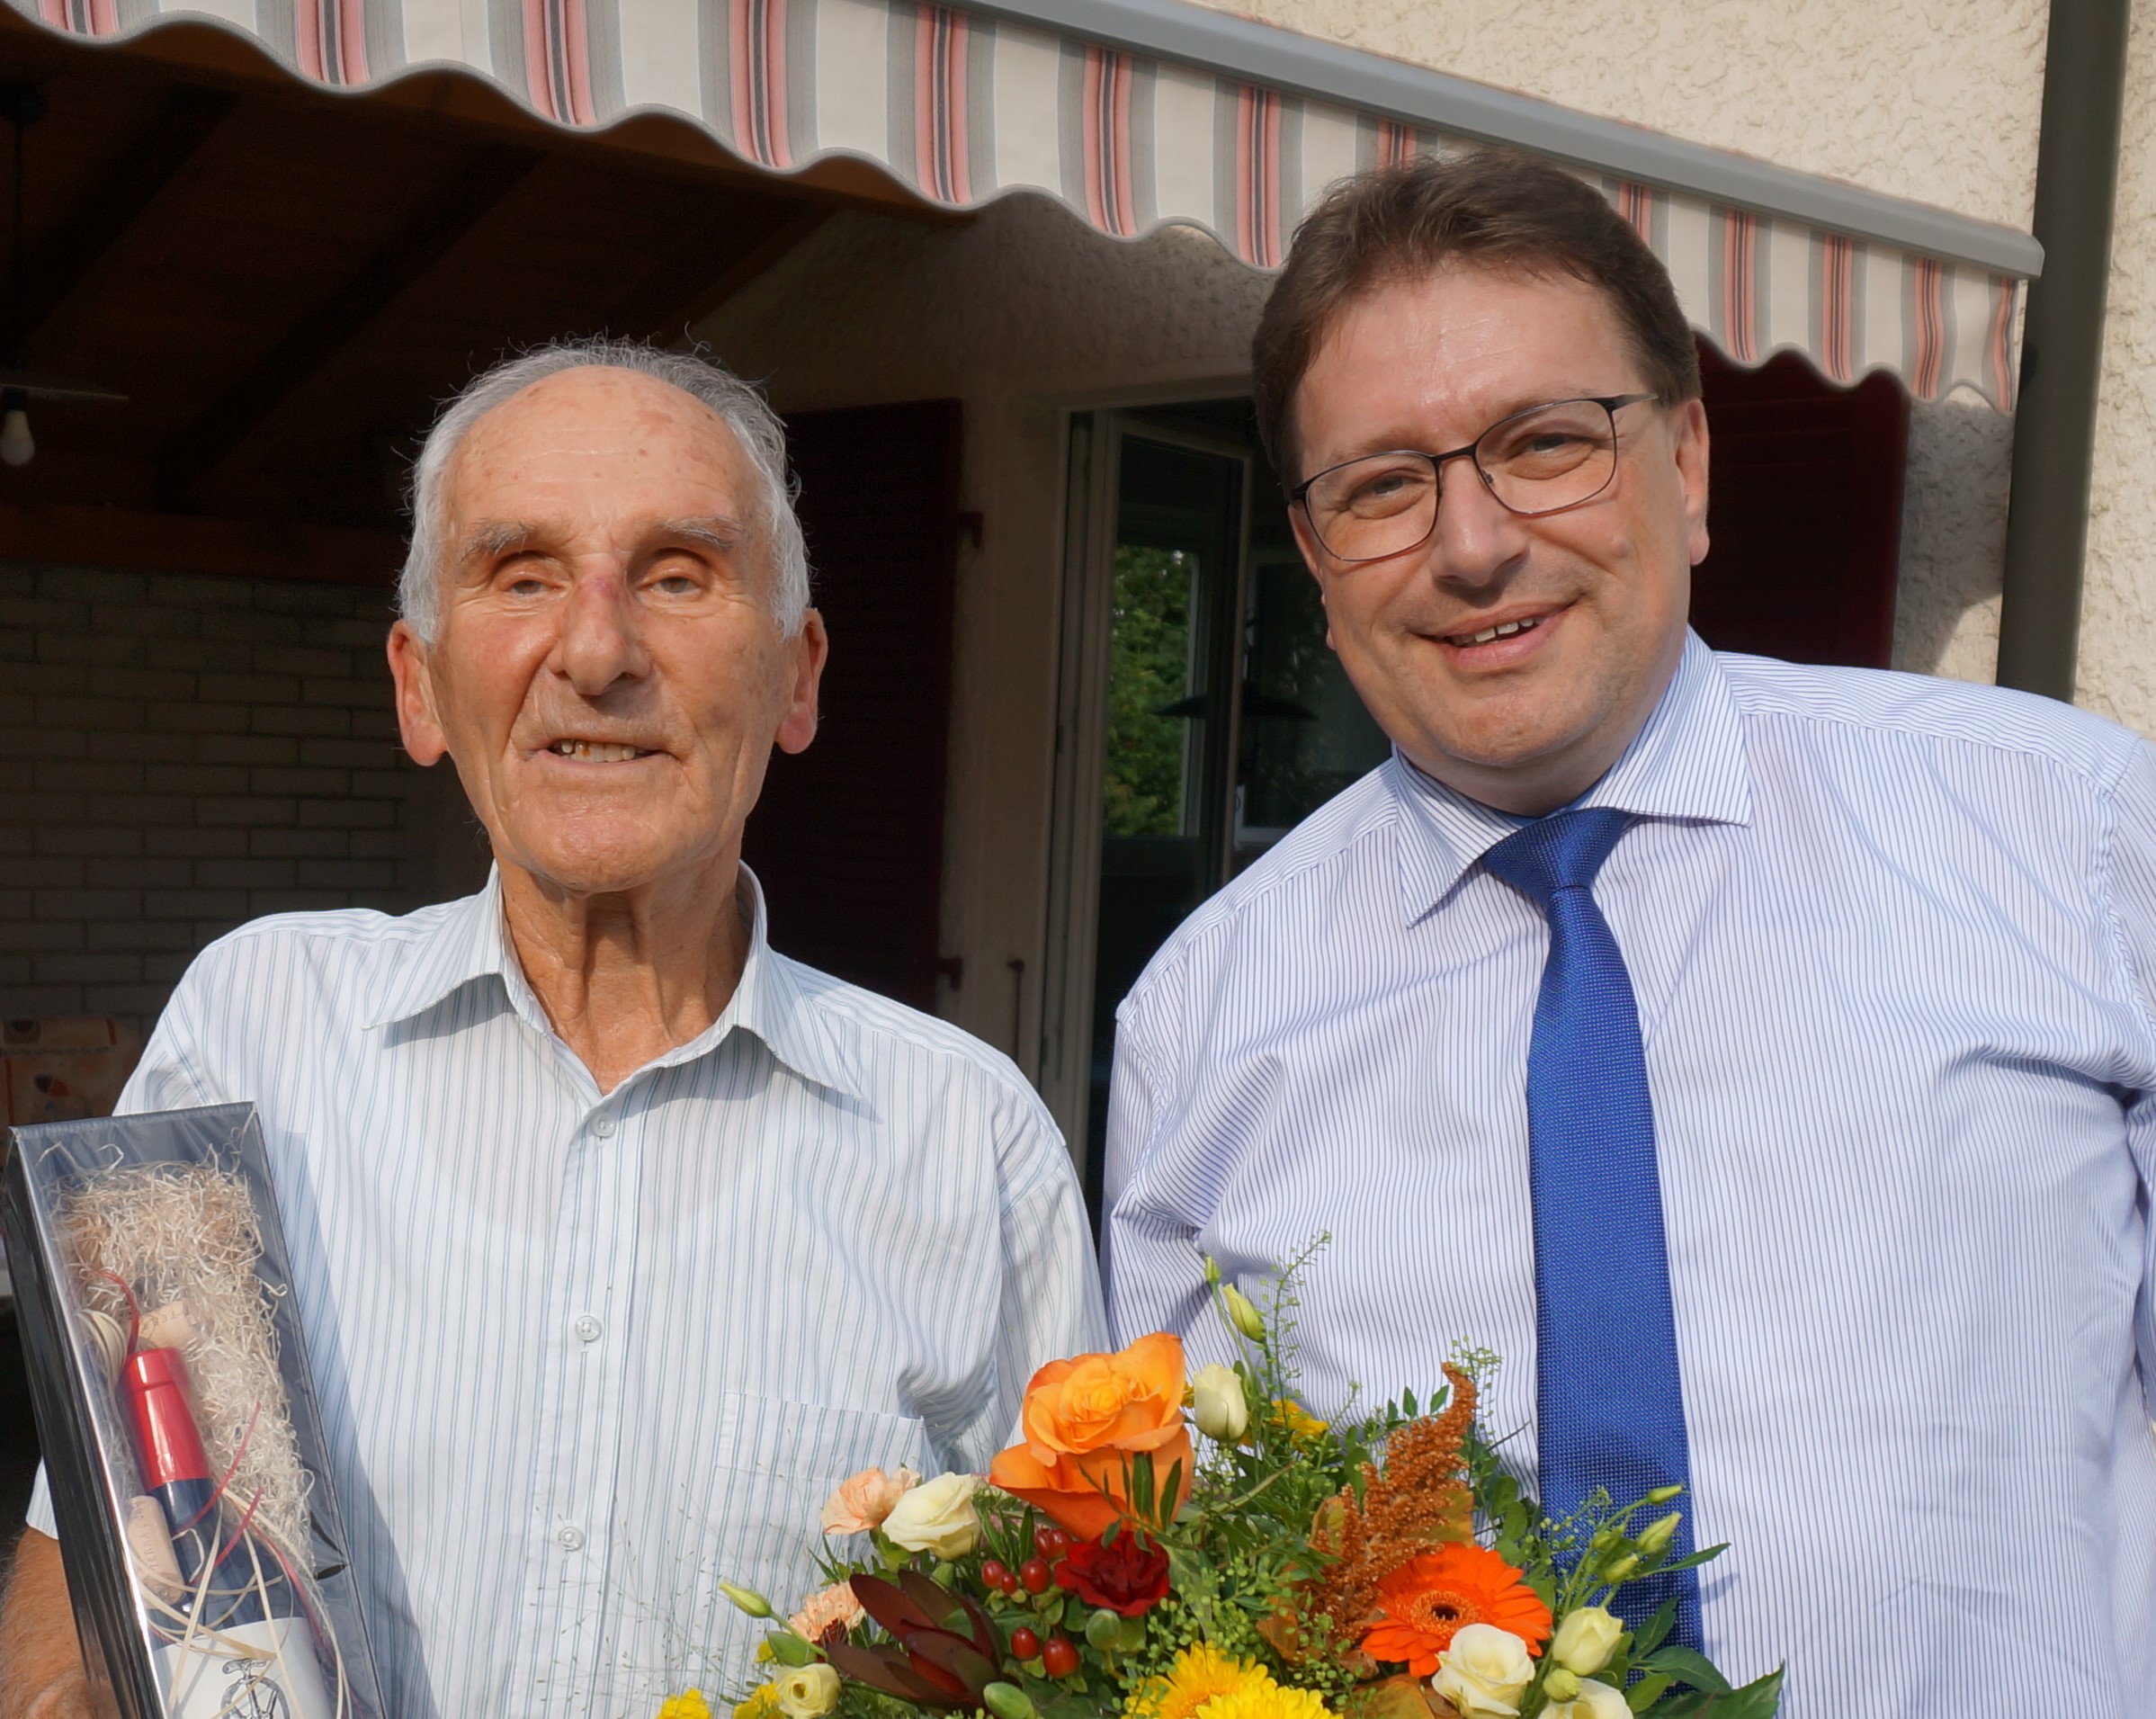 Am Samstag, 12. September 2020, durfte Max Schütz seinen 90. Geburtstag feiern.
Die Gemeindebehörden gratulieren herzlich dazu! 